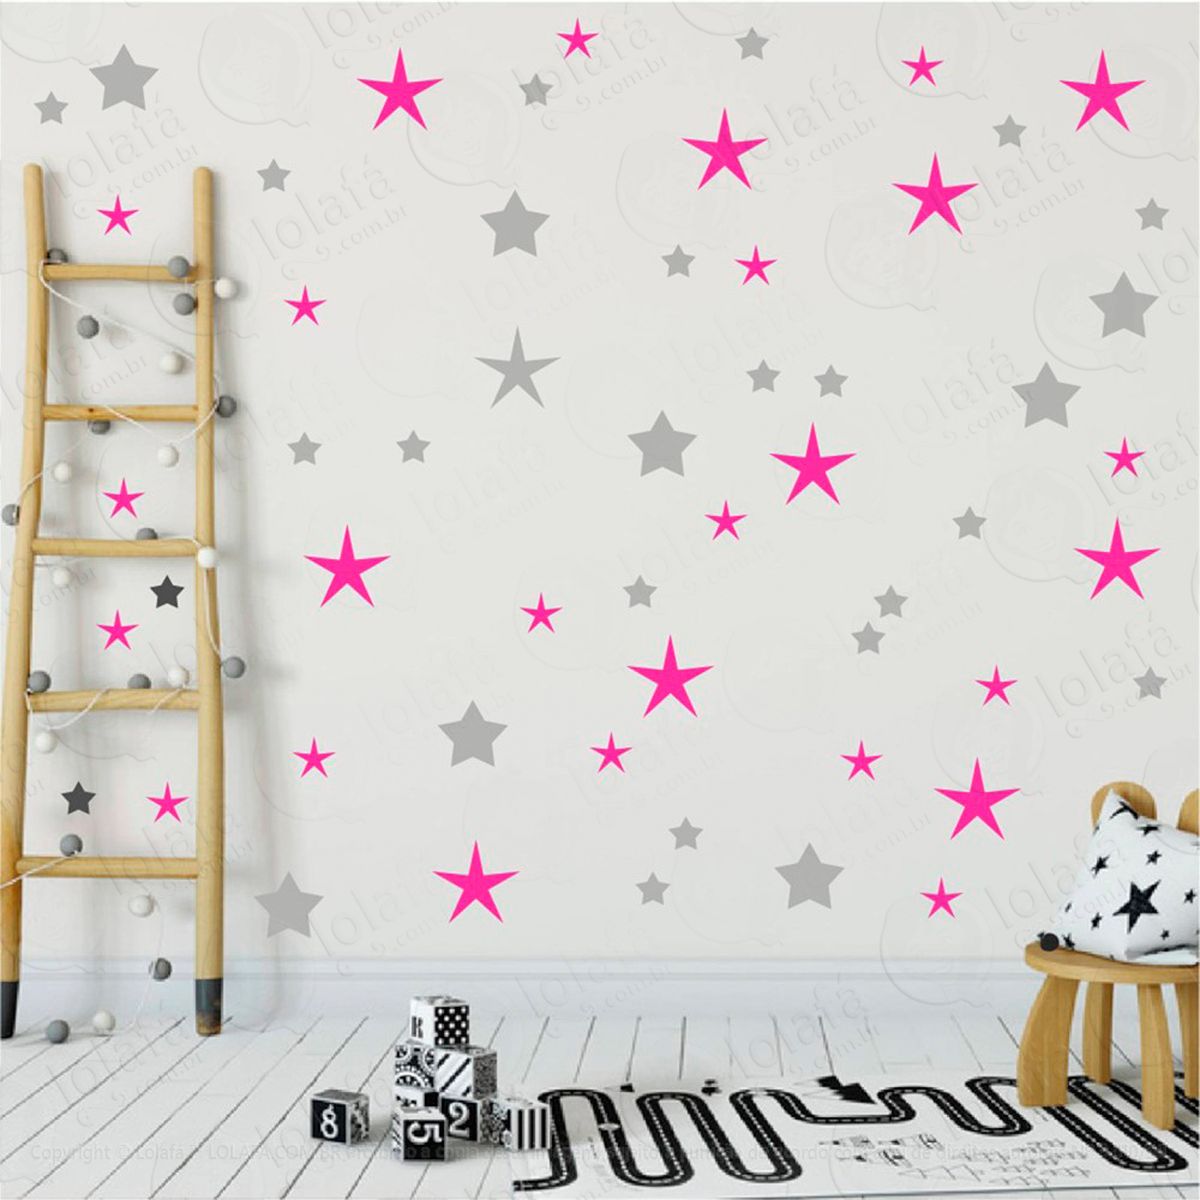 adesivos estrelas 90 peças adesivos para quarto de bebê infantil - mod:26